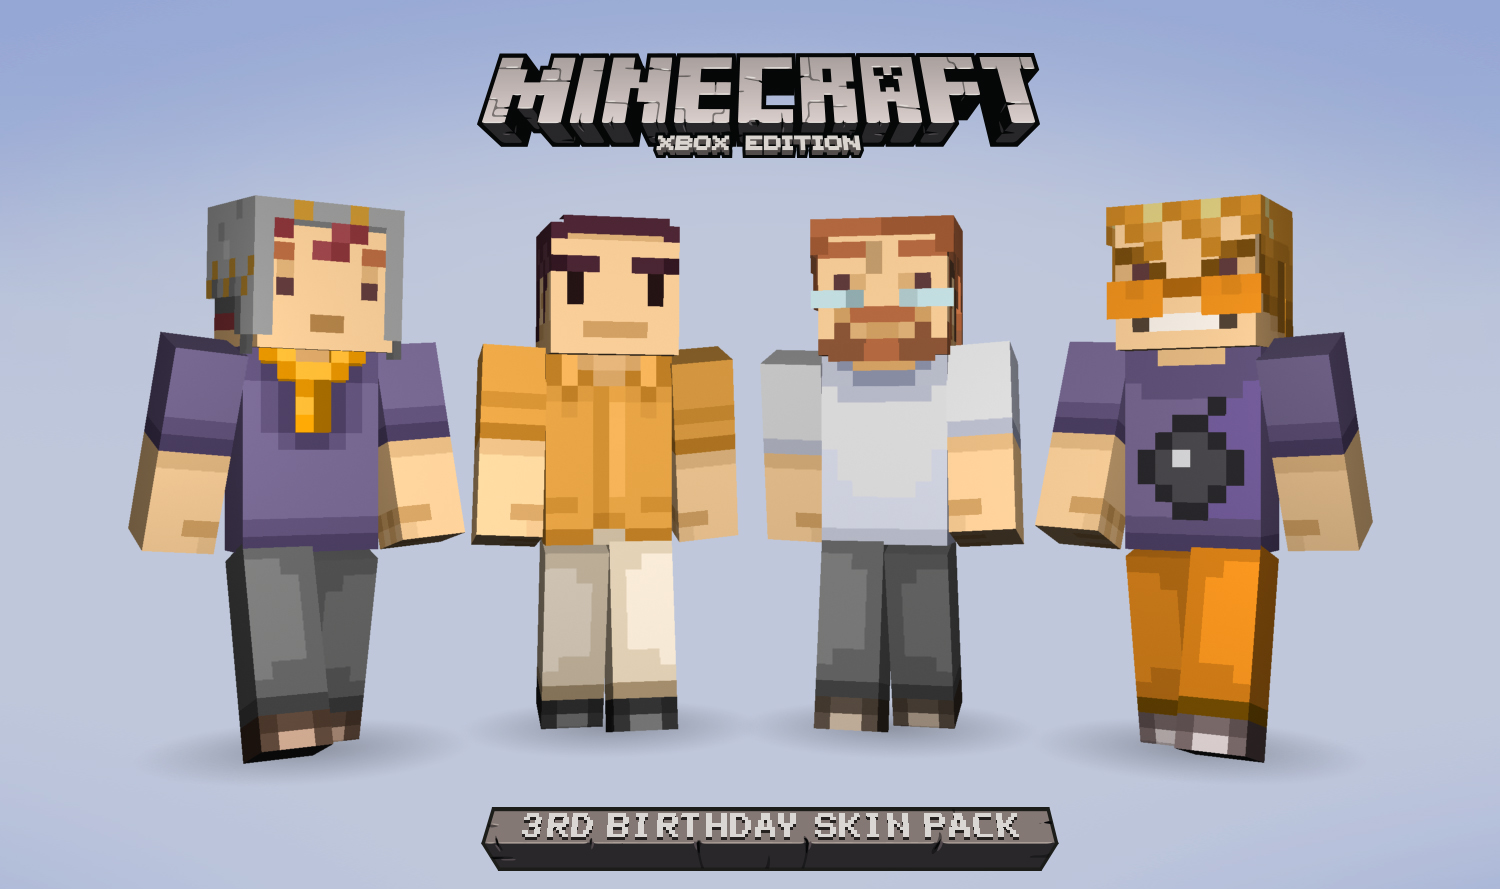 Happy Birthday Minecraft Xbox 360 Edition Celebrate With Free Birthday Skins On Xbox Xbox Wire